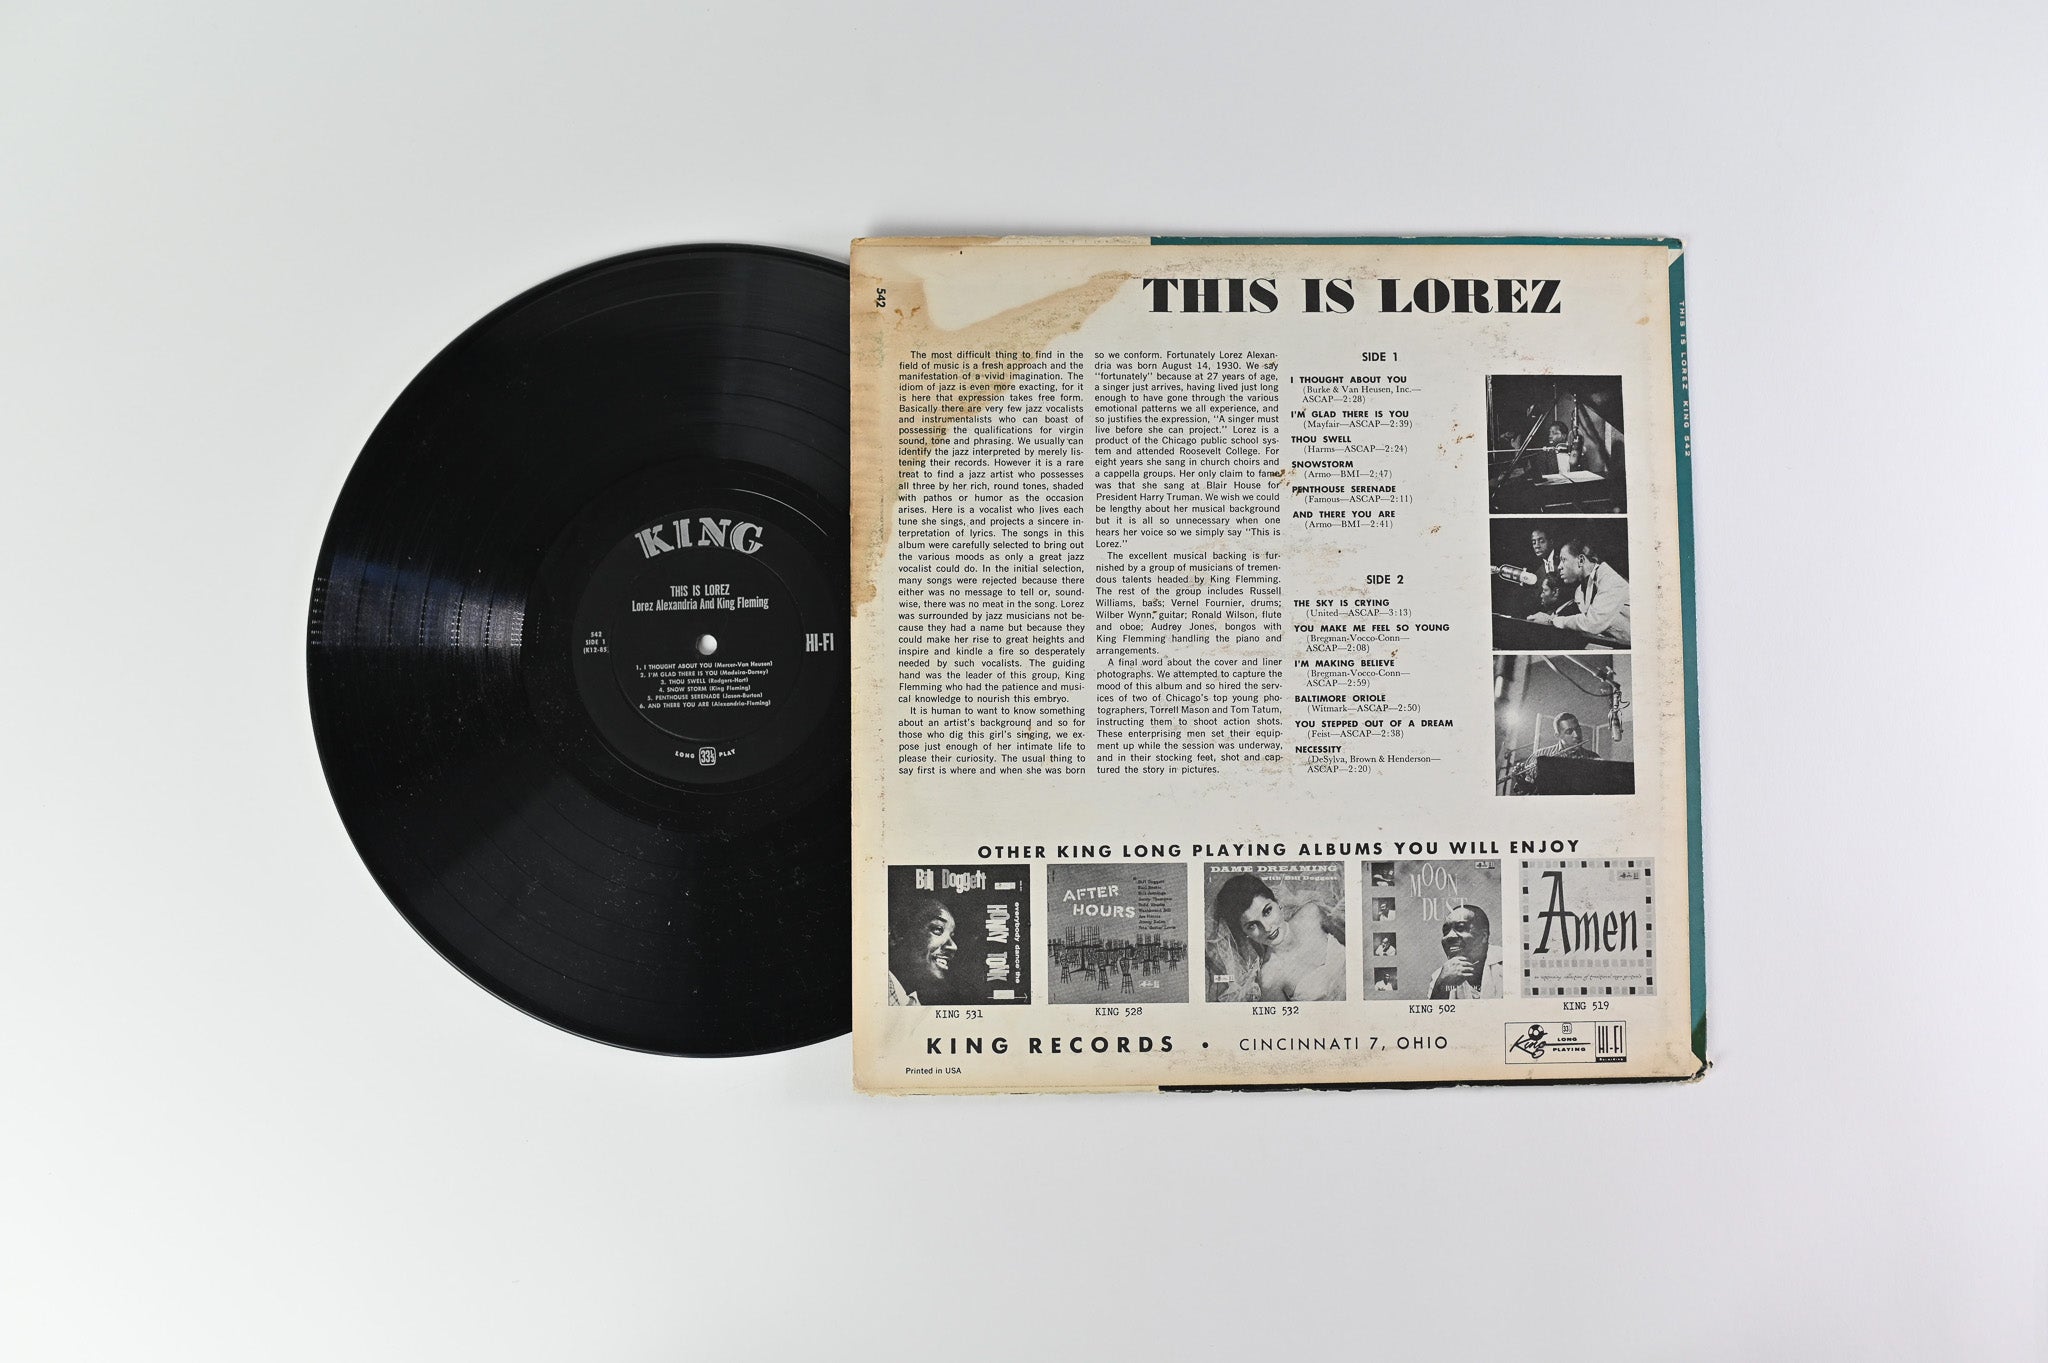 Lorez Alexandria - This Is Lorez Mono on King Records